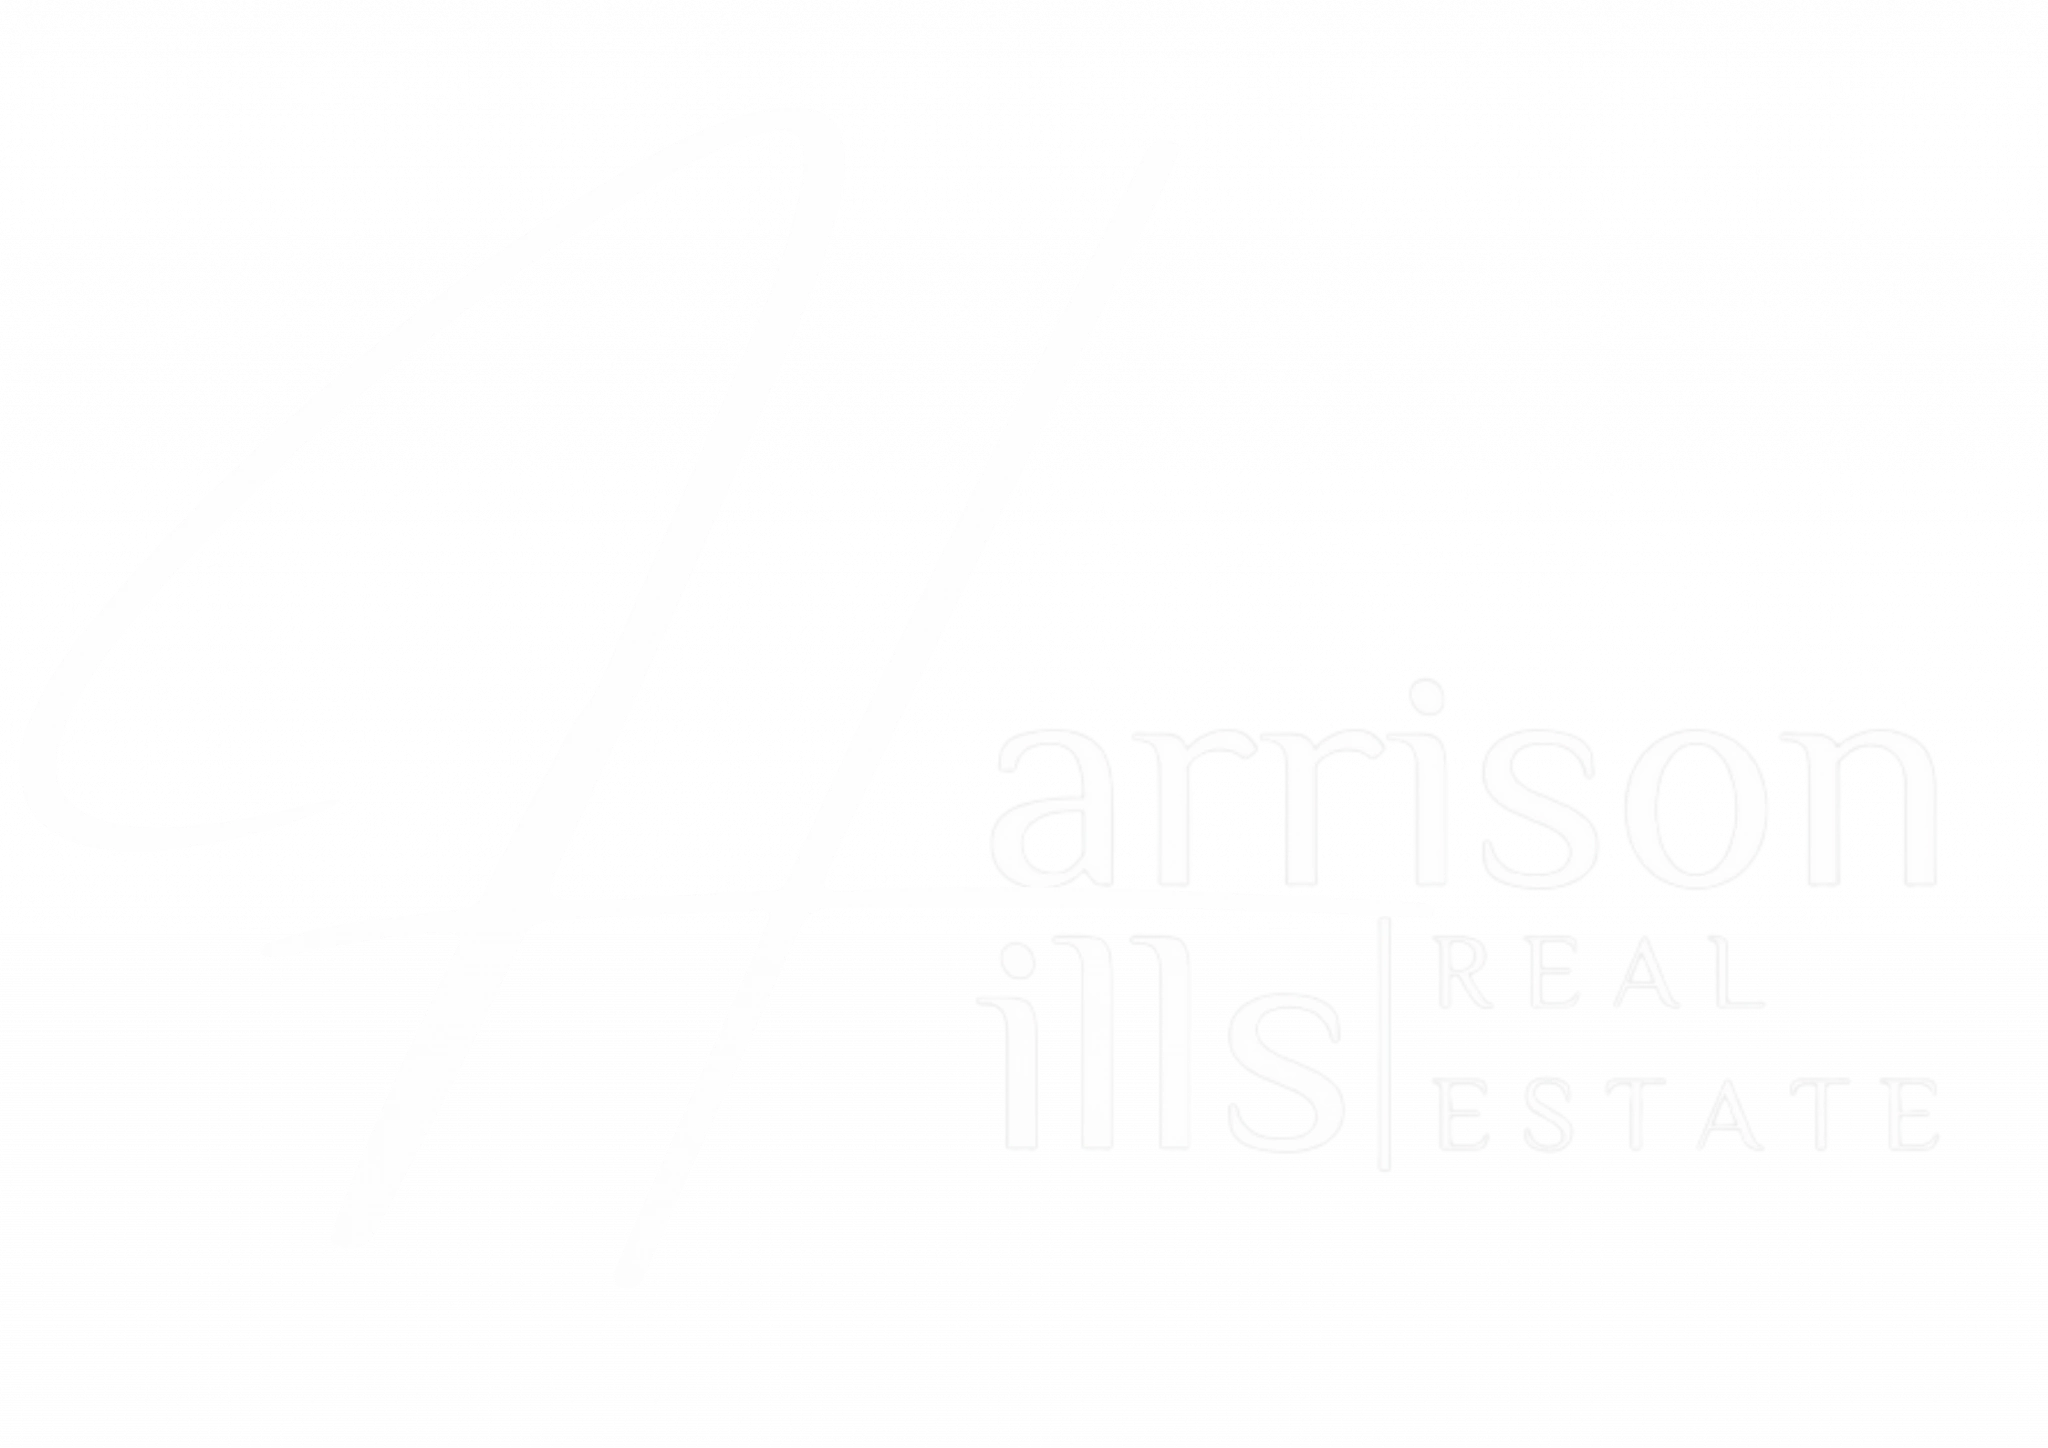 Harrison Hills Real Estate